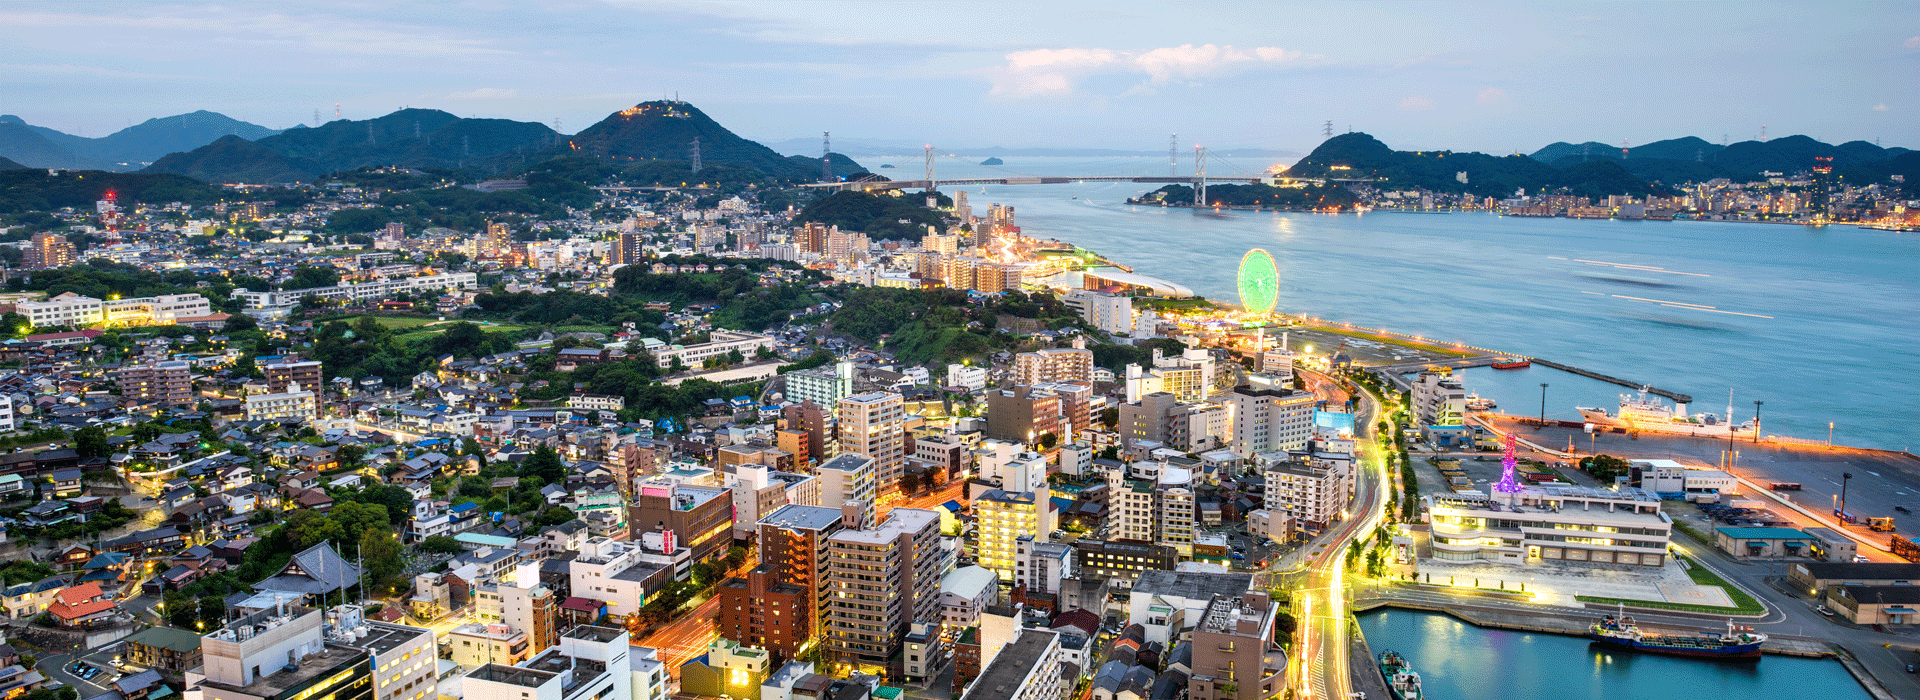 下关港是日本著名的国际港口之一,也是国家特定重要港湾之一